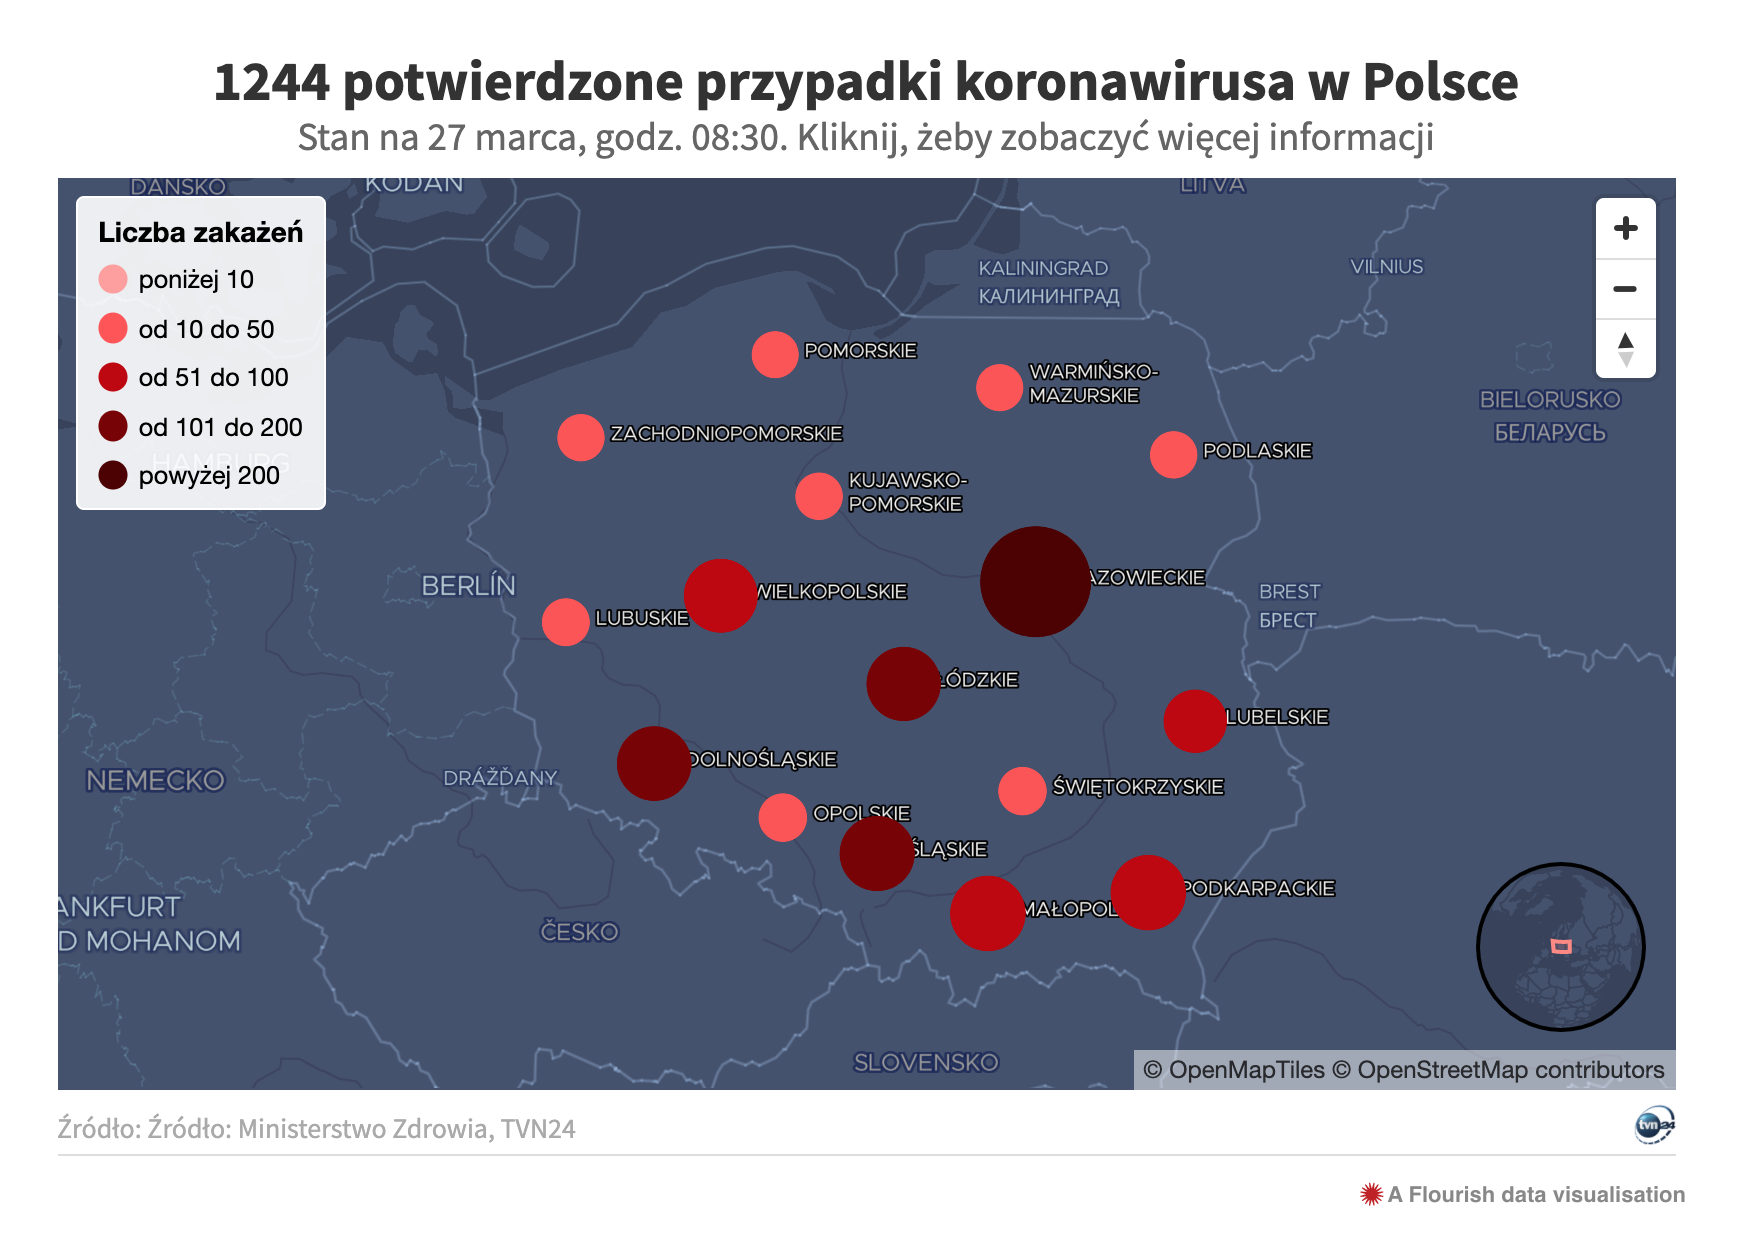 Mapa zo spravodajského portálu TVN24.PL zobrazuje, ako sú v Poľsku rozmiestnení nakazení koronavírusom. Čím tmavšia bodka, tým väčšie ohnisko nákazy.